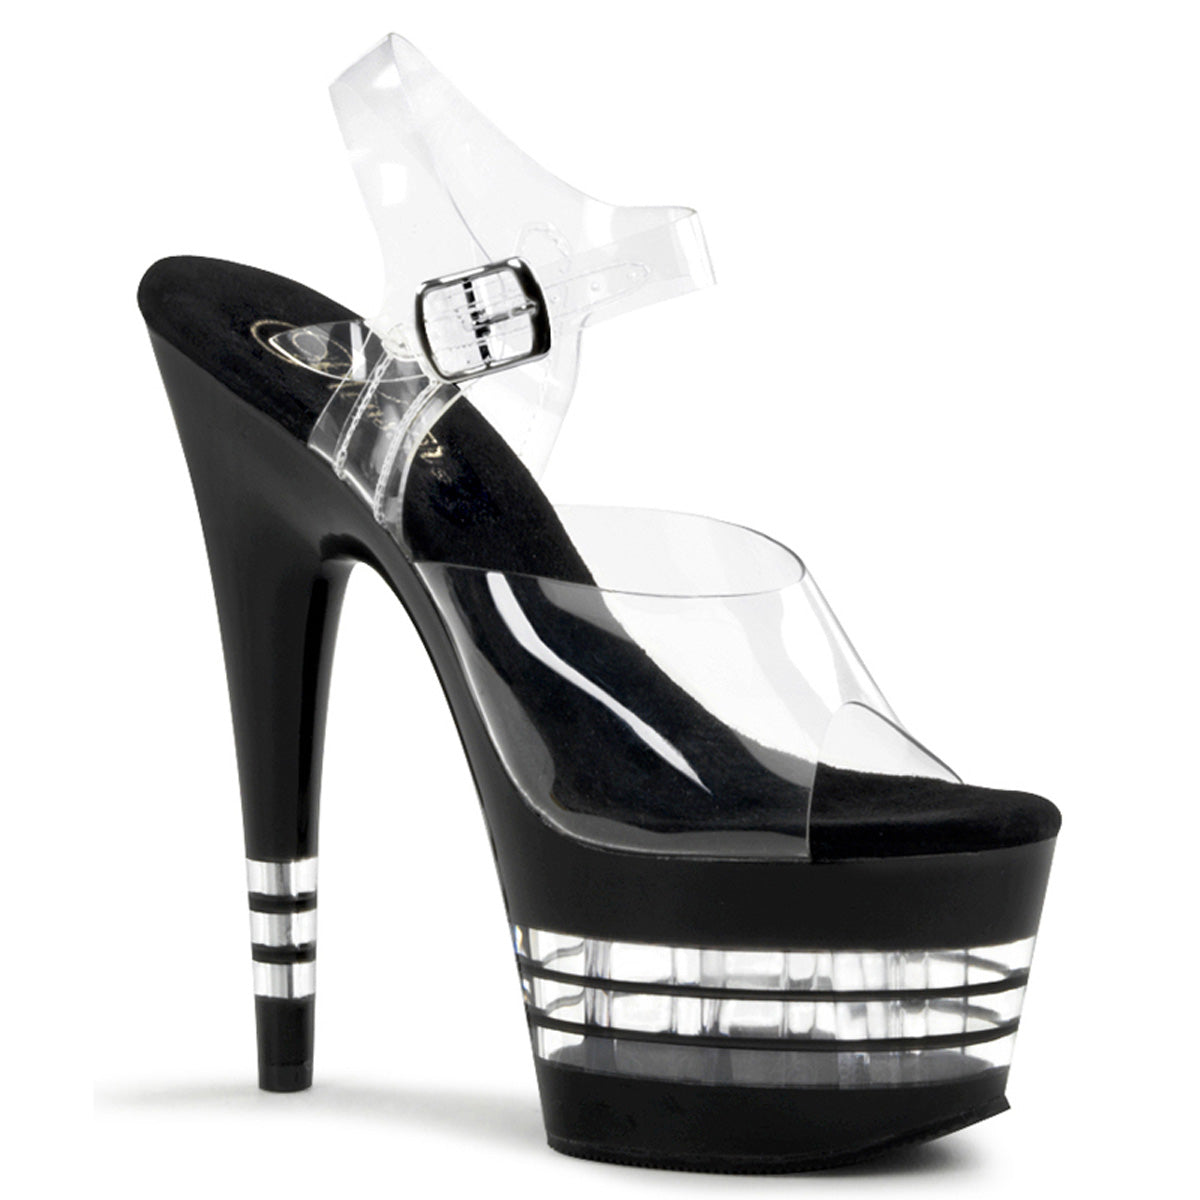 Adore-708Ln 7 "каблук прозрачный и черный полюс танцует обувь